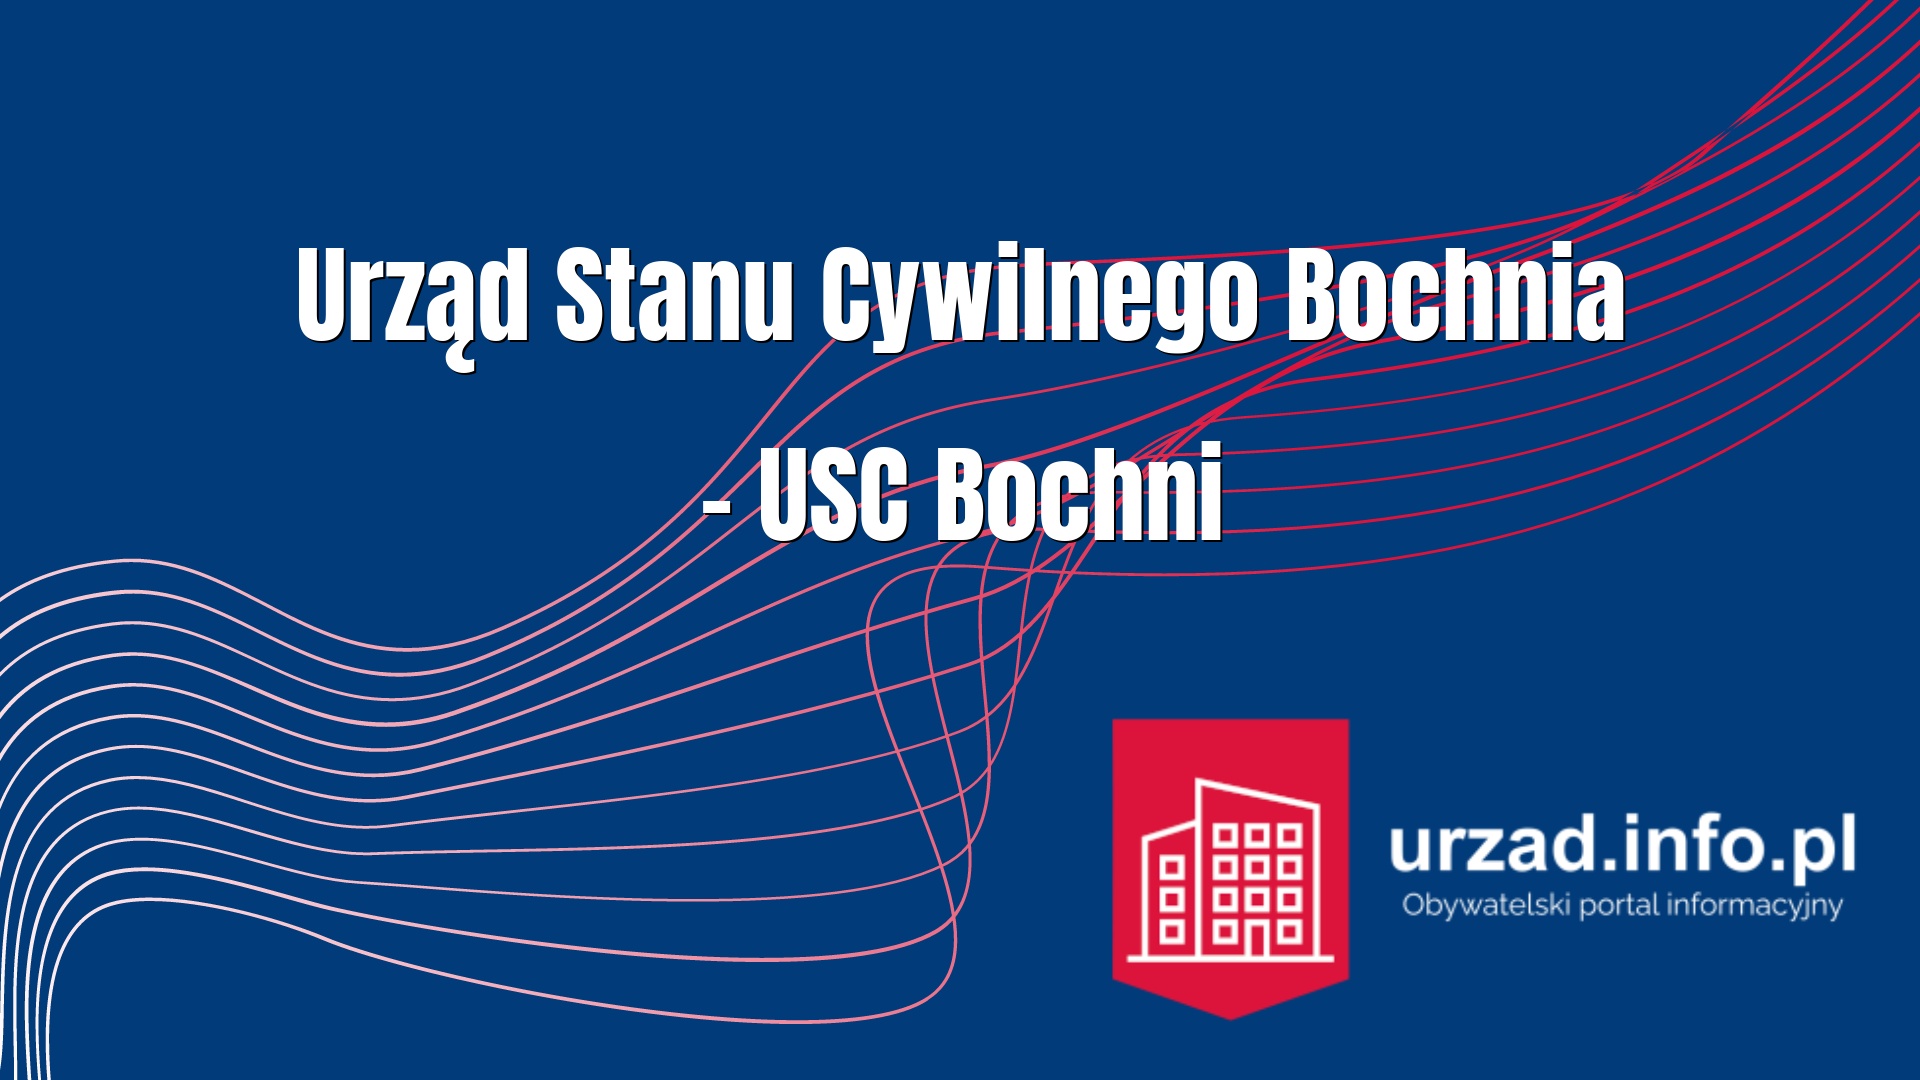 Urząd Stanu Cywilnego Bochnia – USC Bochni